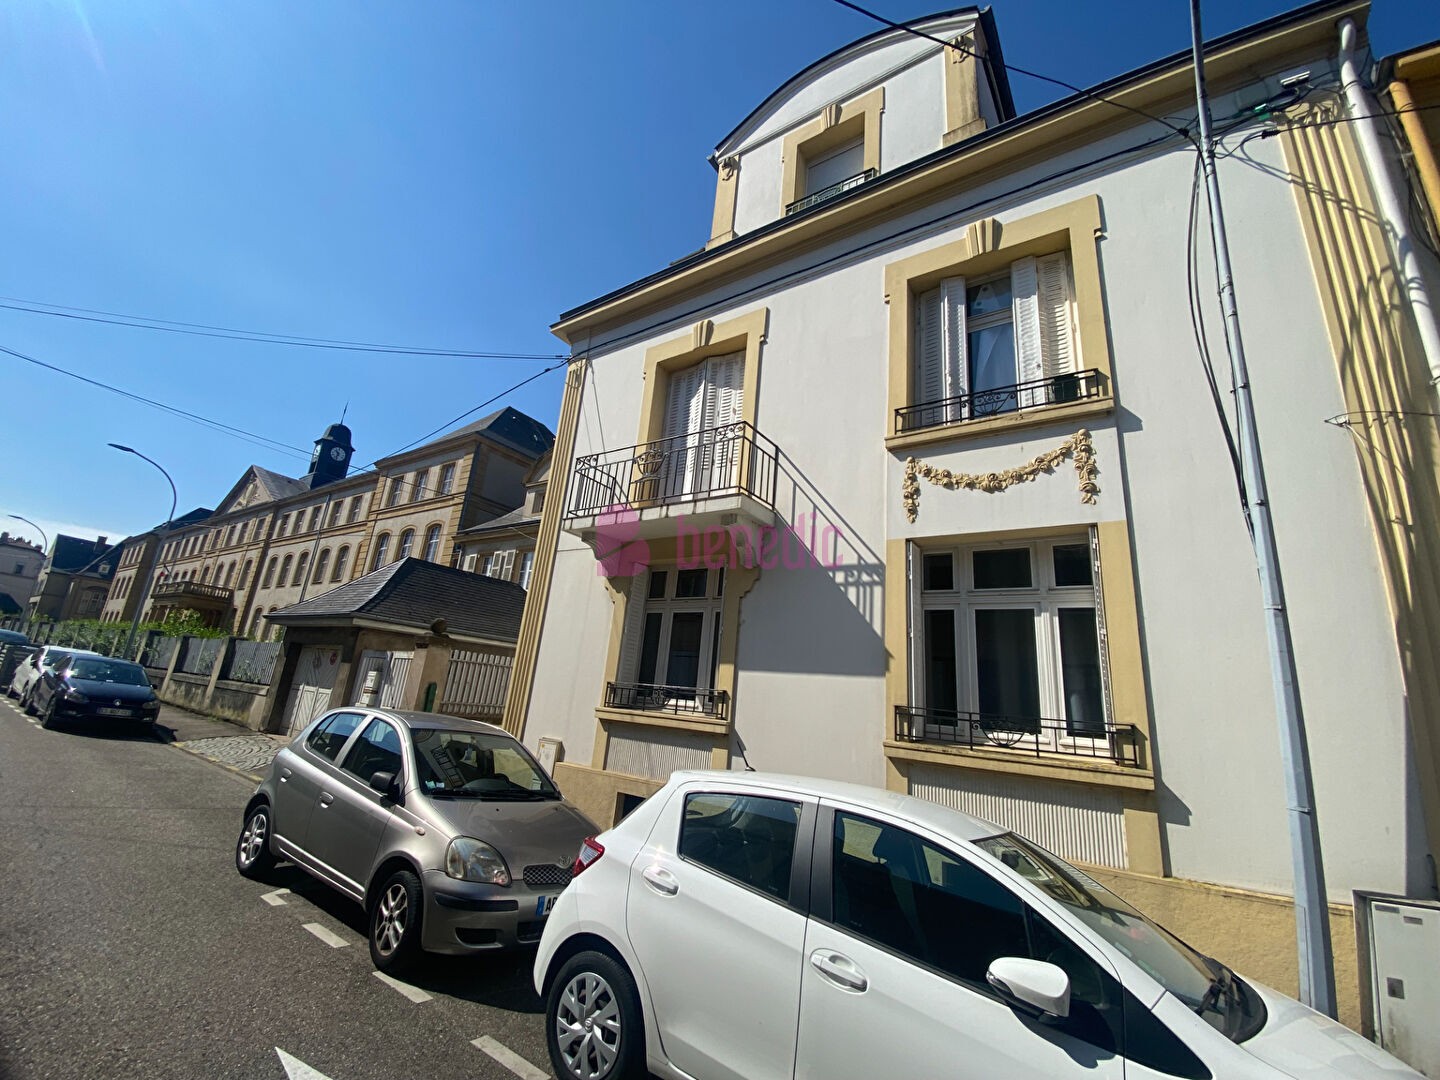 Vente Bureau / Commerce à Montigny-lès-Metz 3 pièces